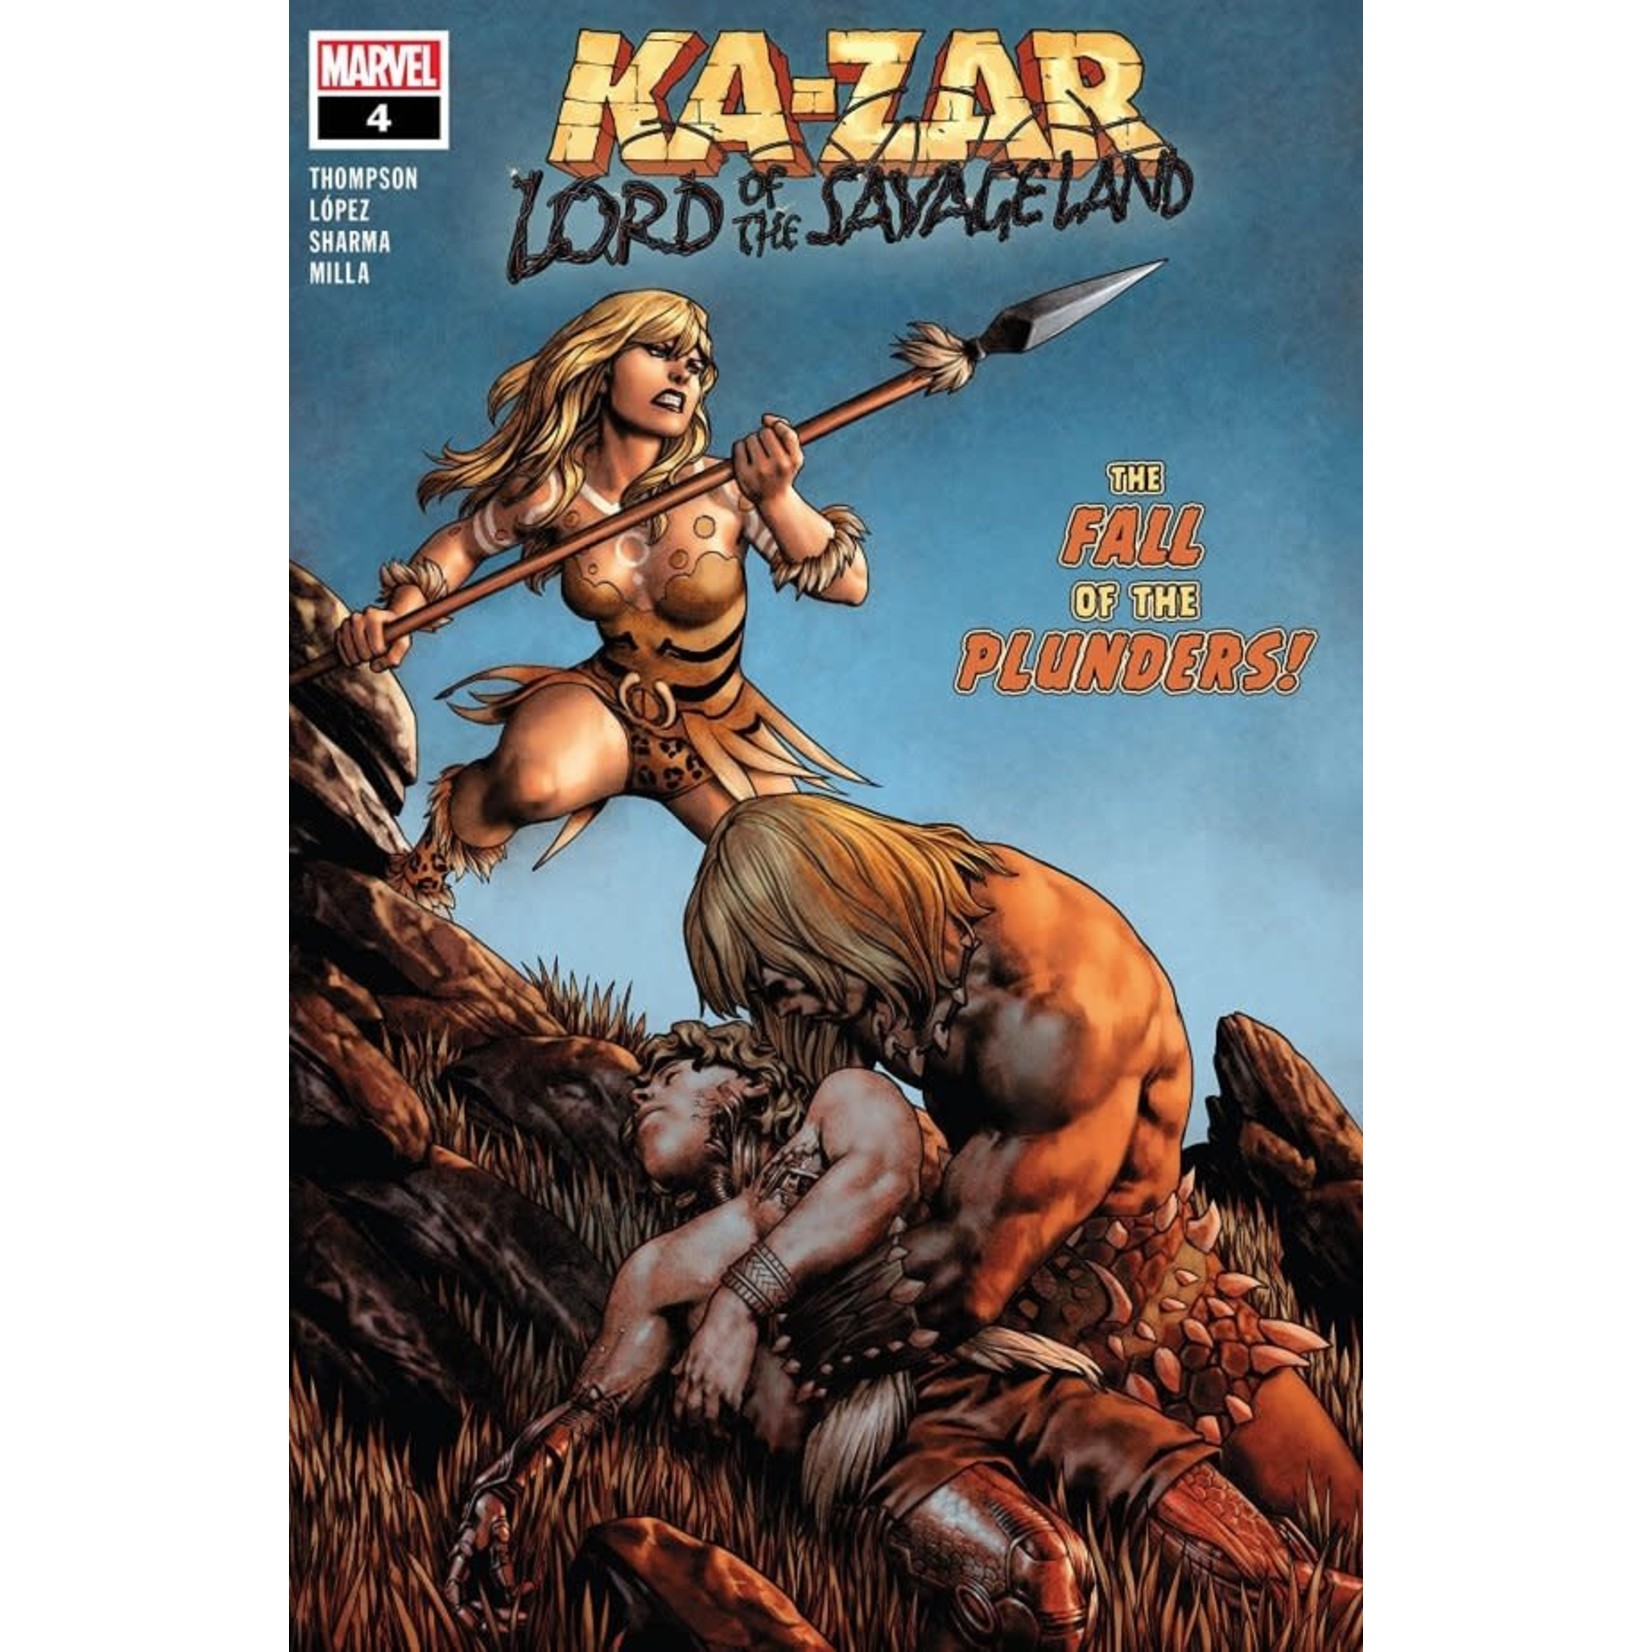 Marvel Ka-Zar: Lord of the Savage Land #4